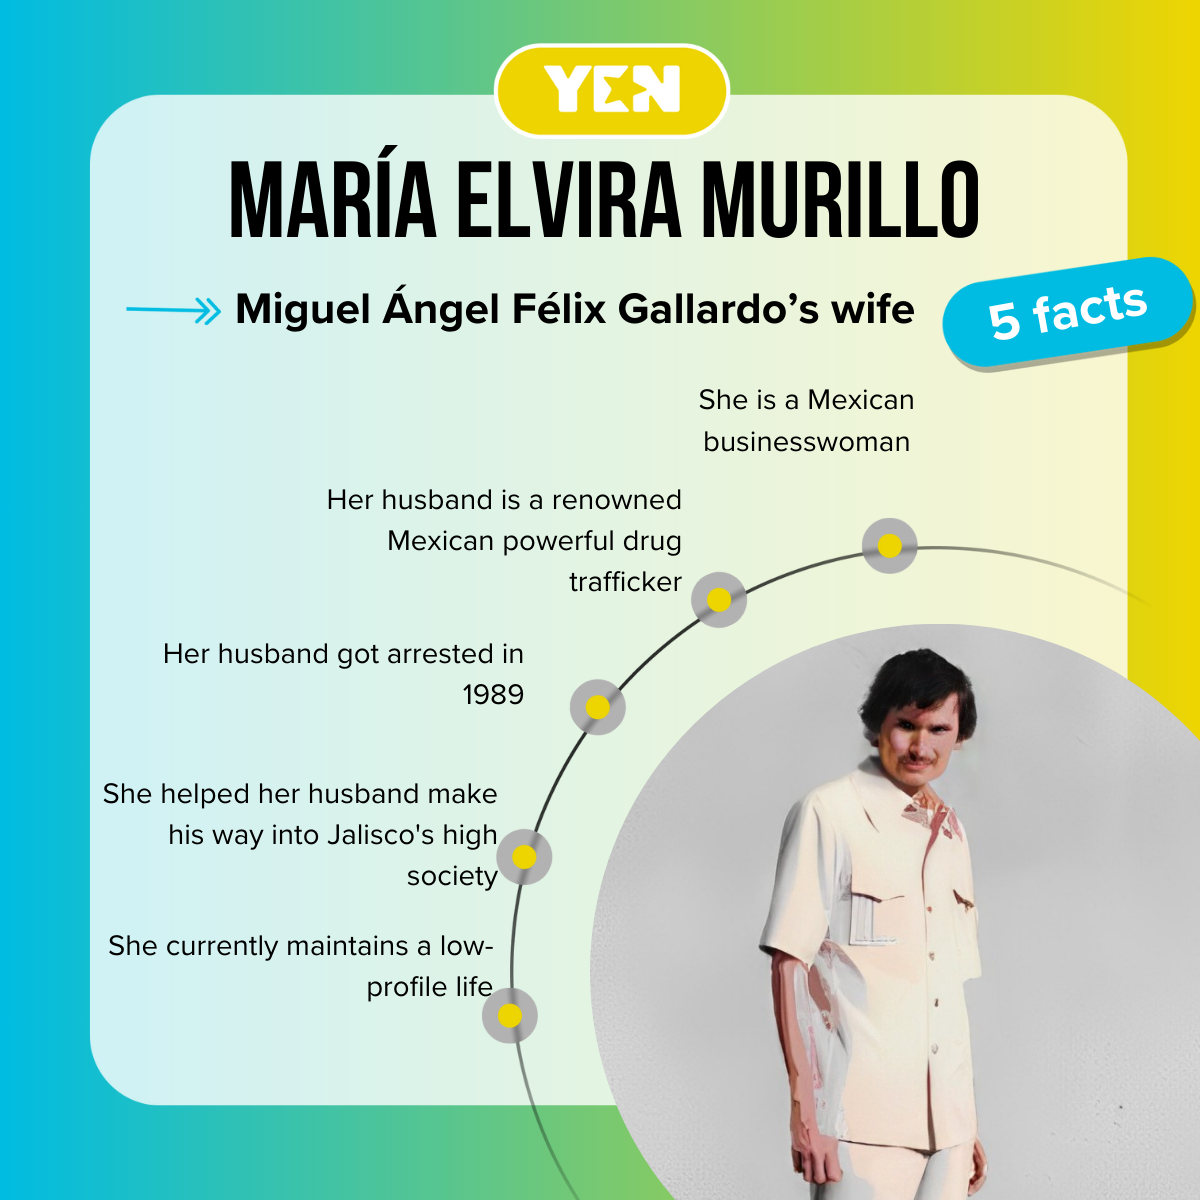 Top 5 facts about María Elvira Murillo